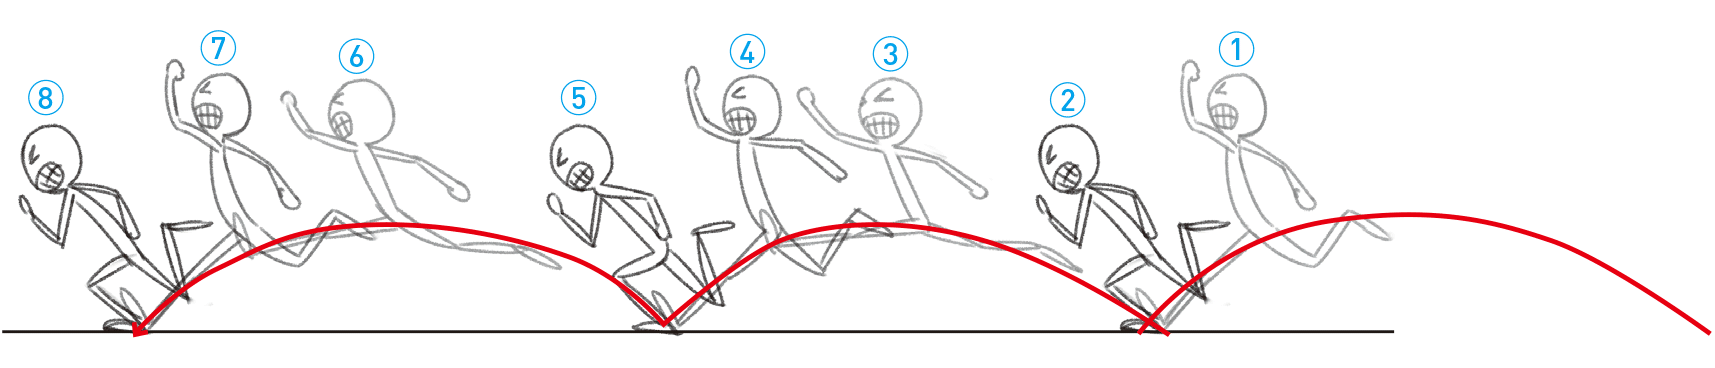 メイキング 基本的な走り方と女の子らしい走り方 アニメ イラスト マンガ描き方ナビ